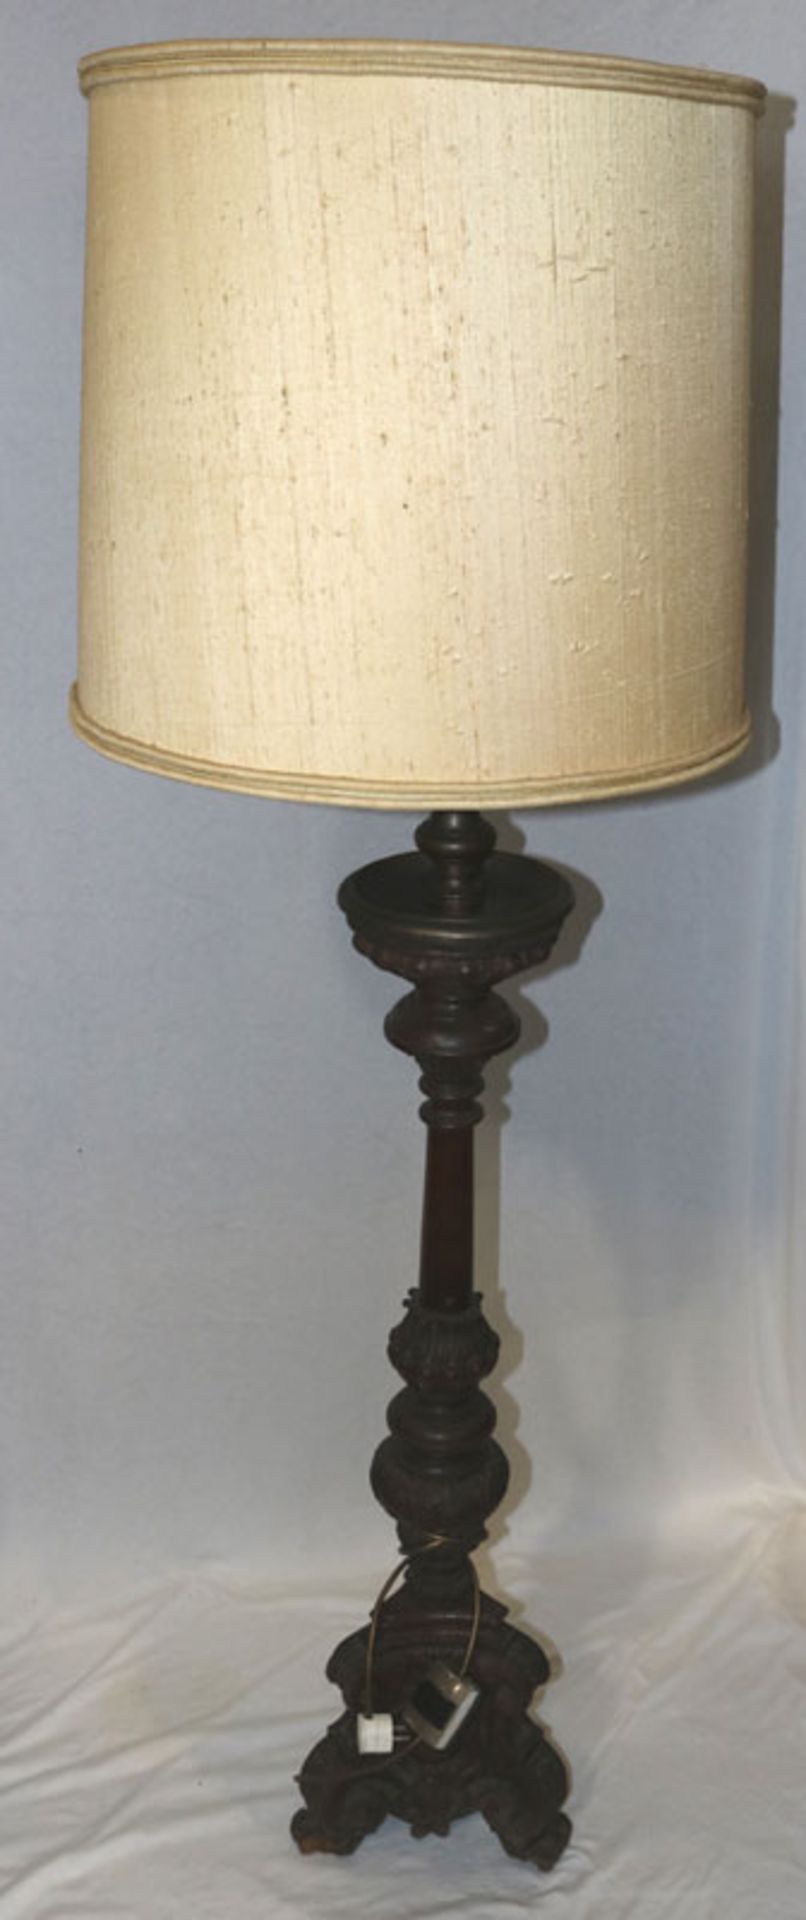 Stehlampe, Holz/Metall Fuß, beschnitzt, dunkel gebeizt mit beigem Schirm, H 162 cm, D 50 cm,